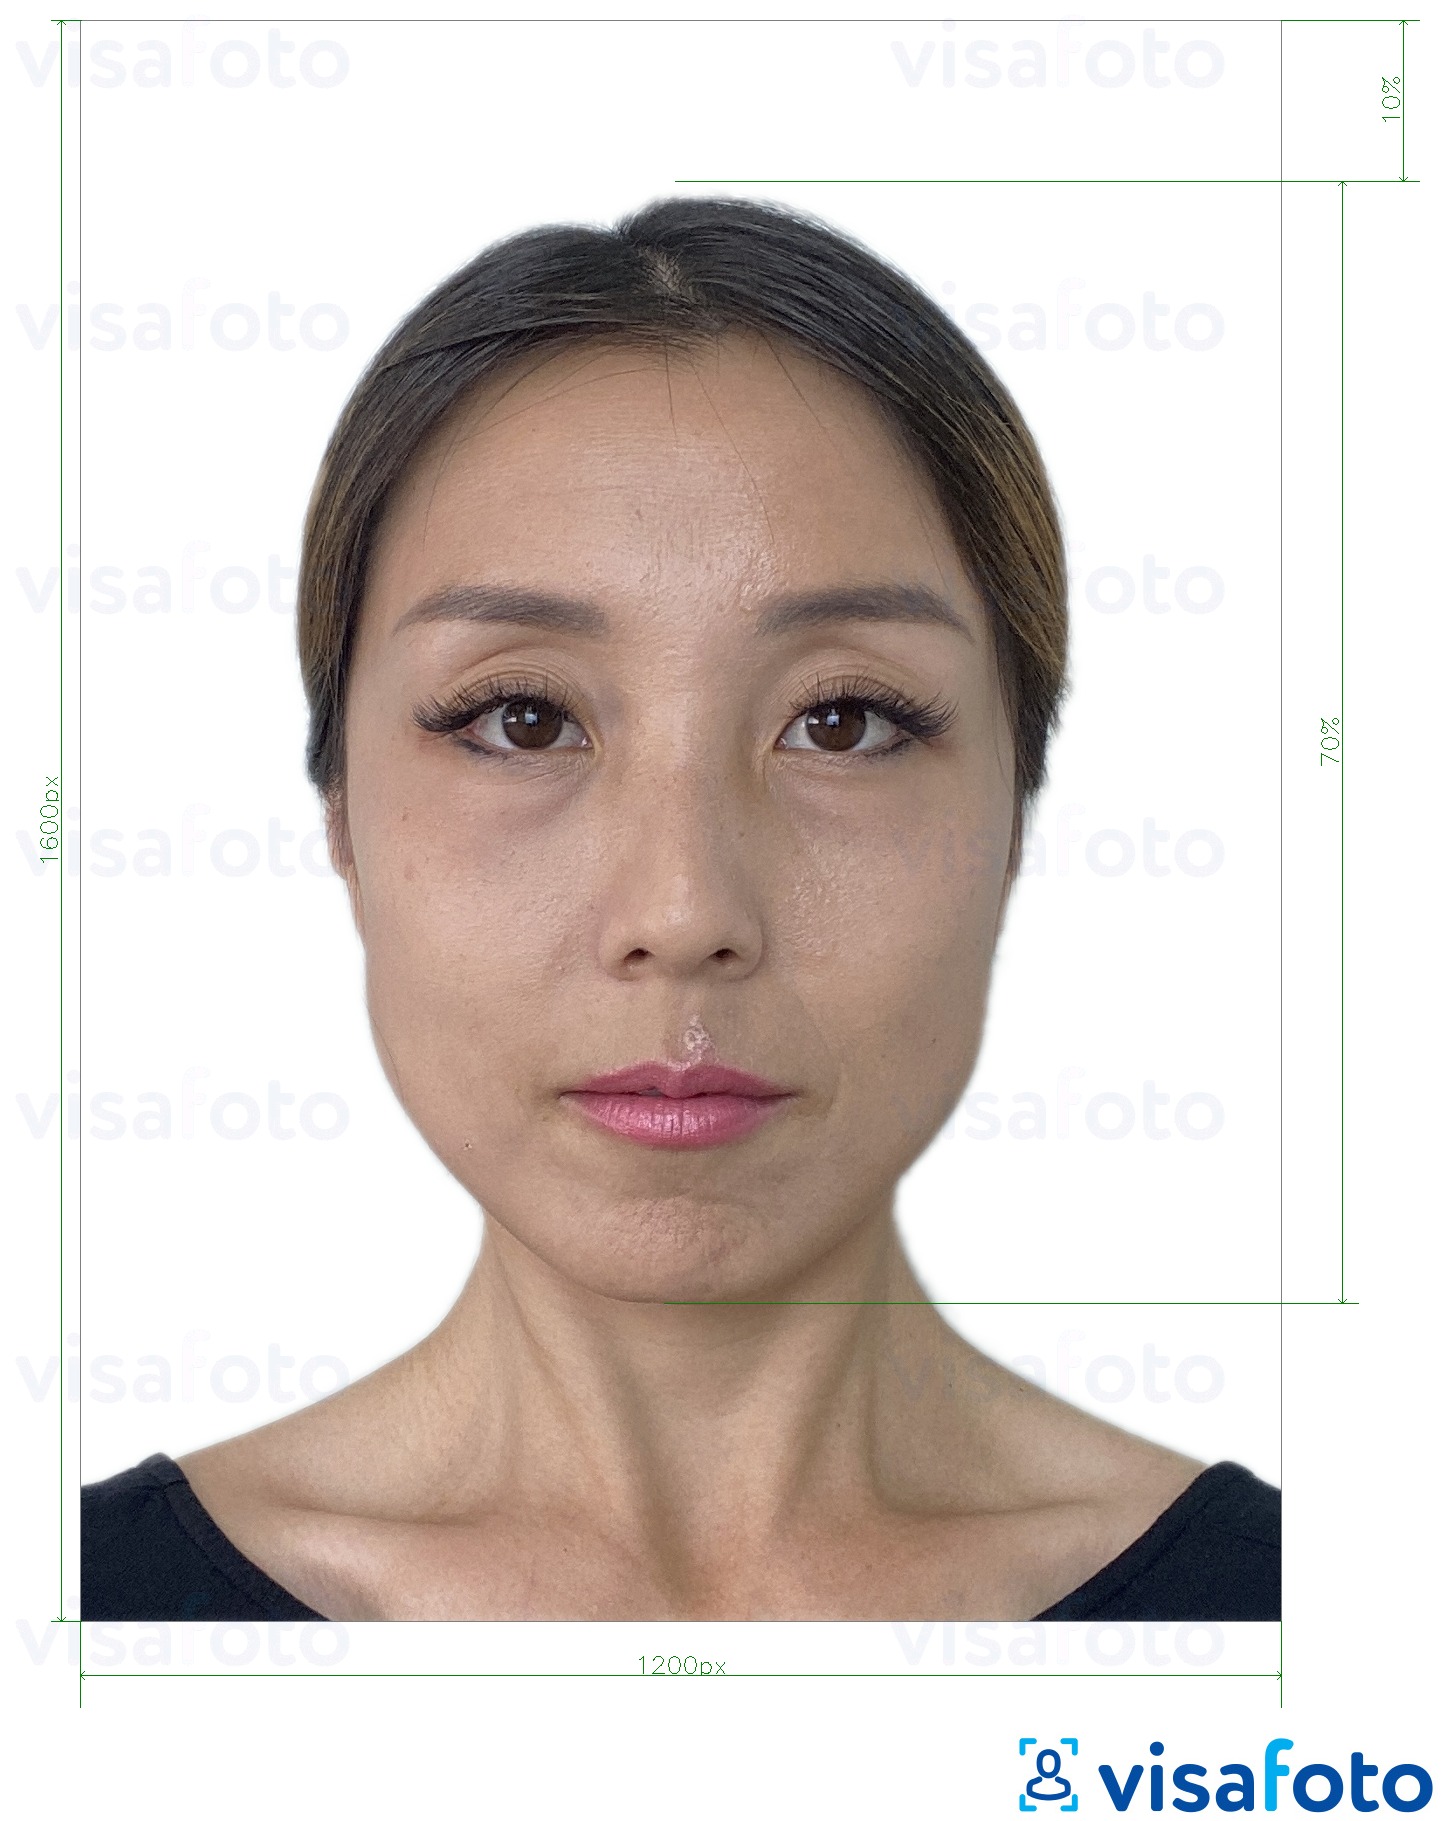 Contoh foto untuk Hong Kong dalam talian e-pasport 1200x1600 piksel dengan spesifikasi saiz yang tepat.